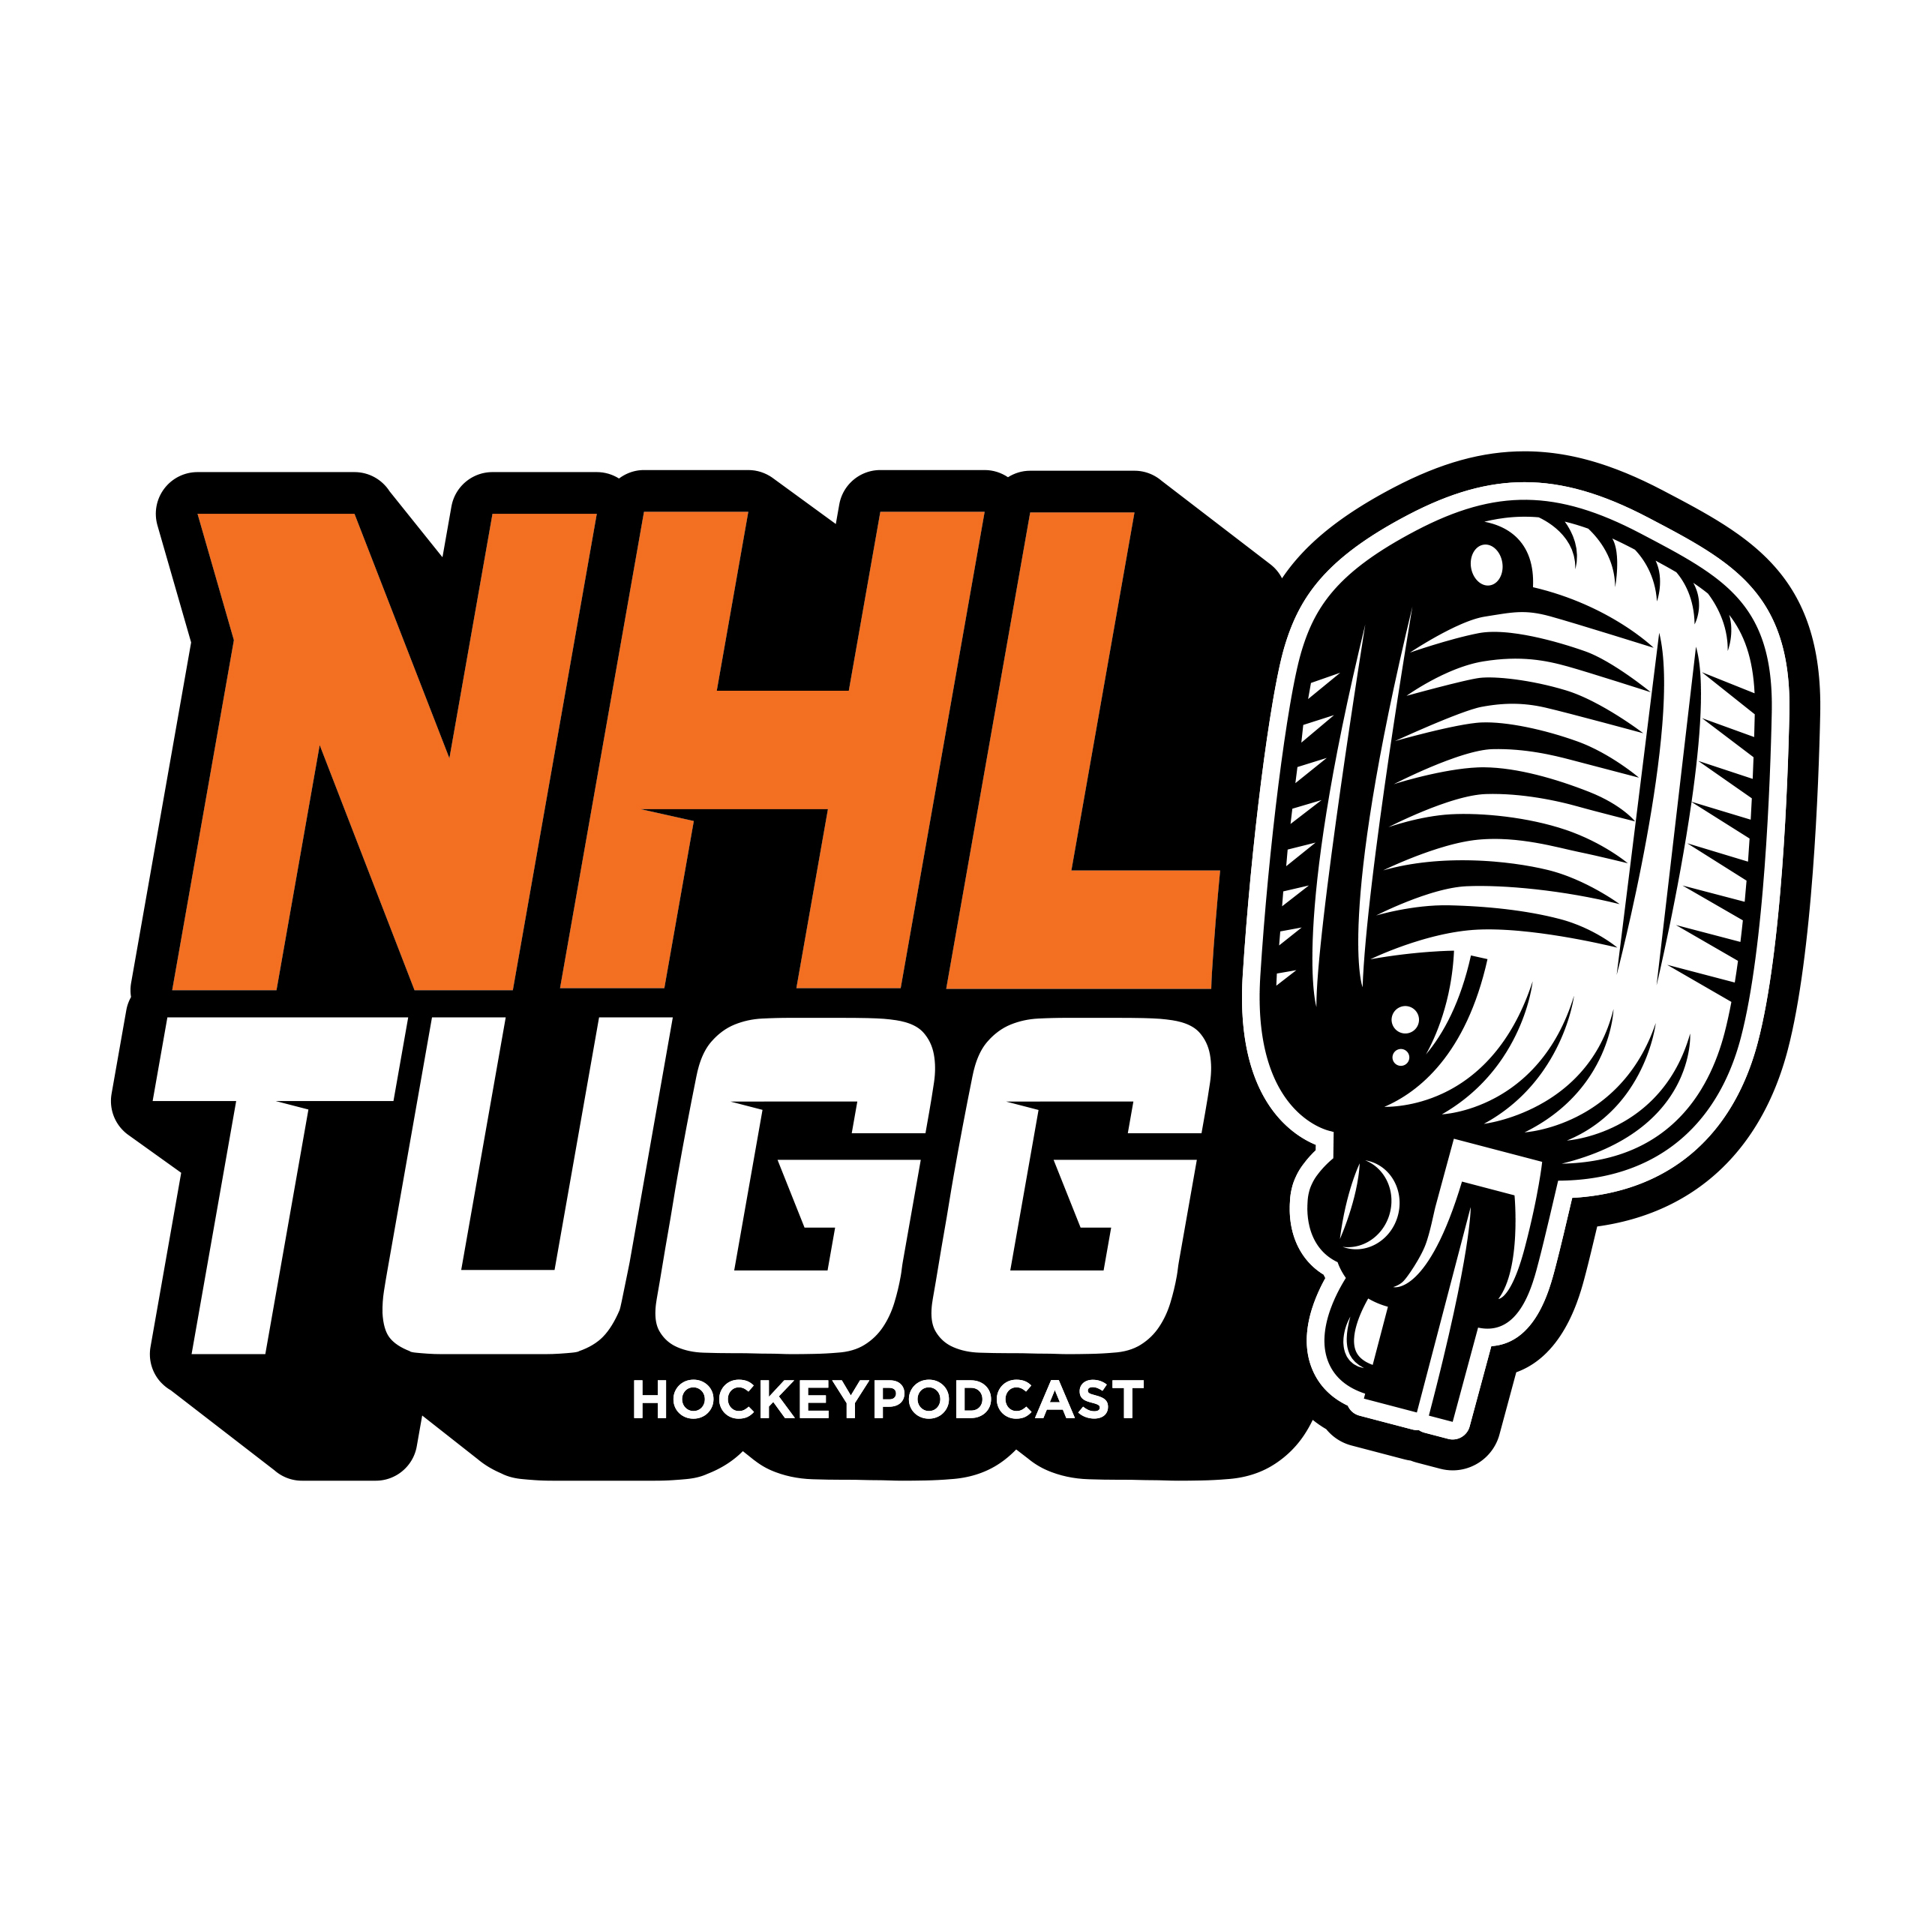 NHL-Tugg avsnitt 79 “Ett riktigt as”